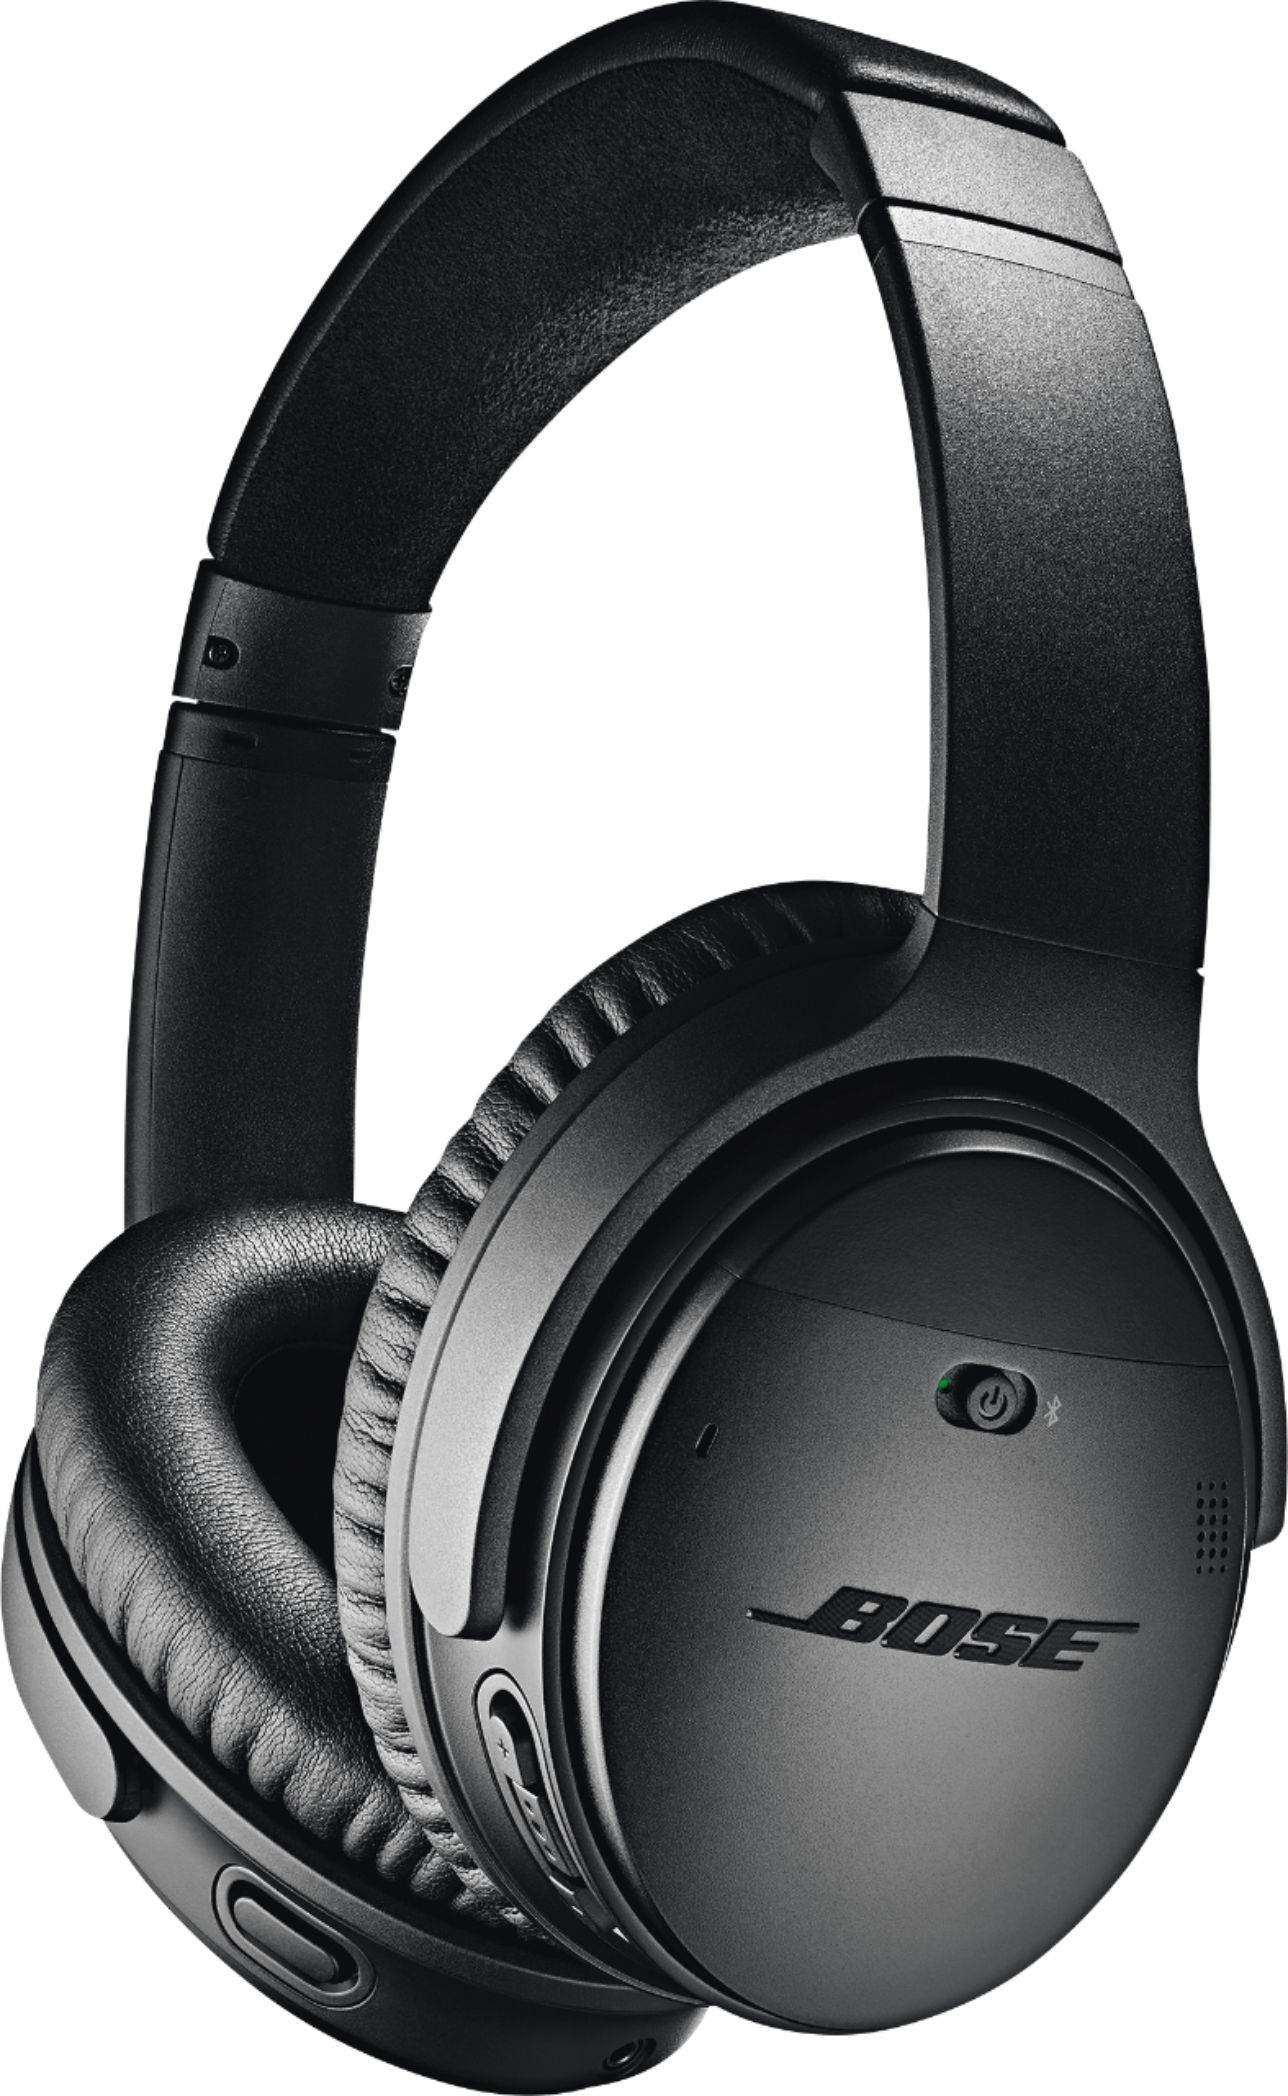 Bose QuietComfort 35 II Wireless Noise Cancelling Headphones Black 789564-0010 - Best Buy | Best Buy U.S.